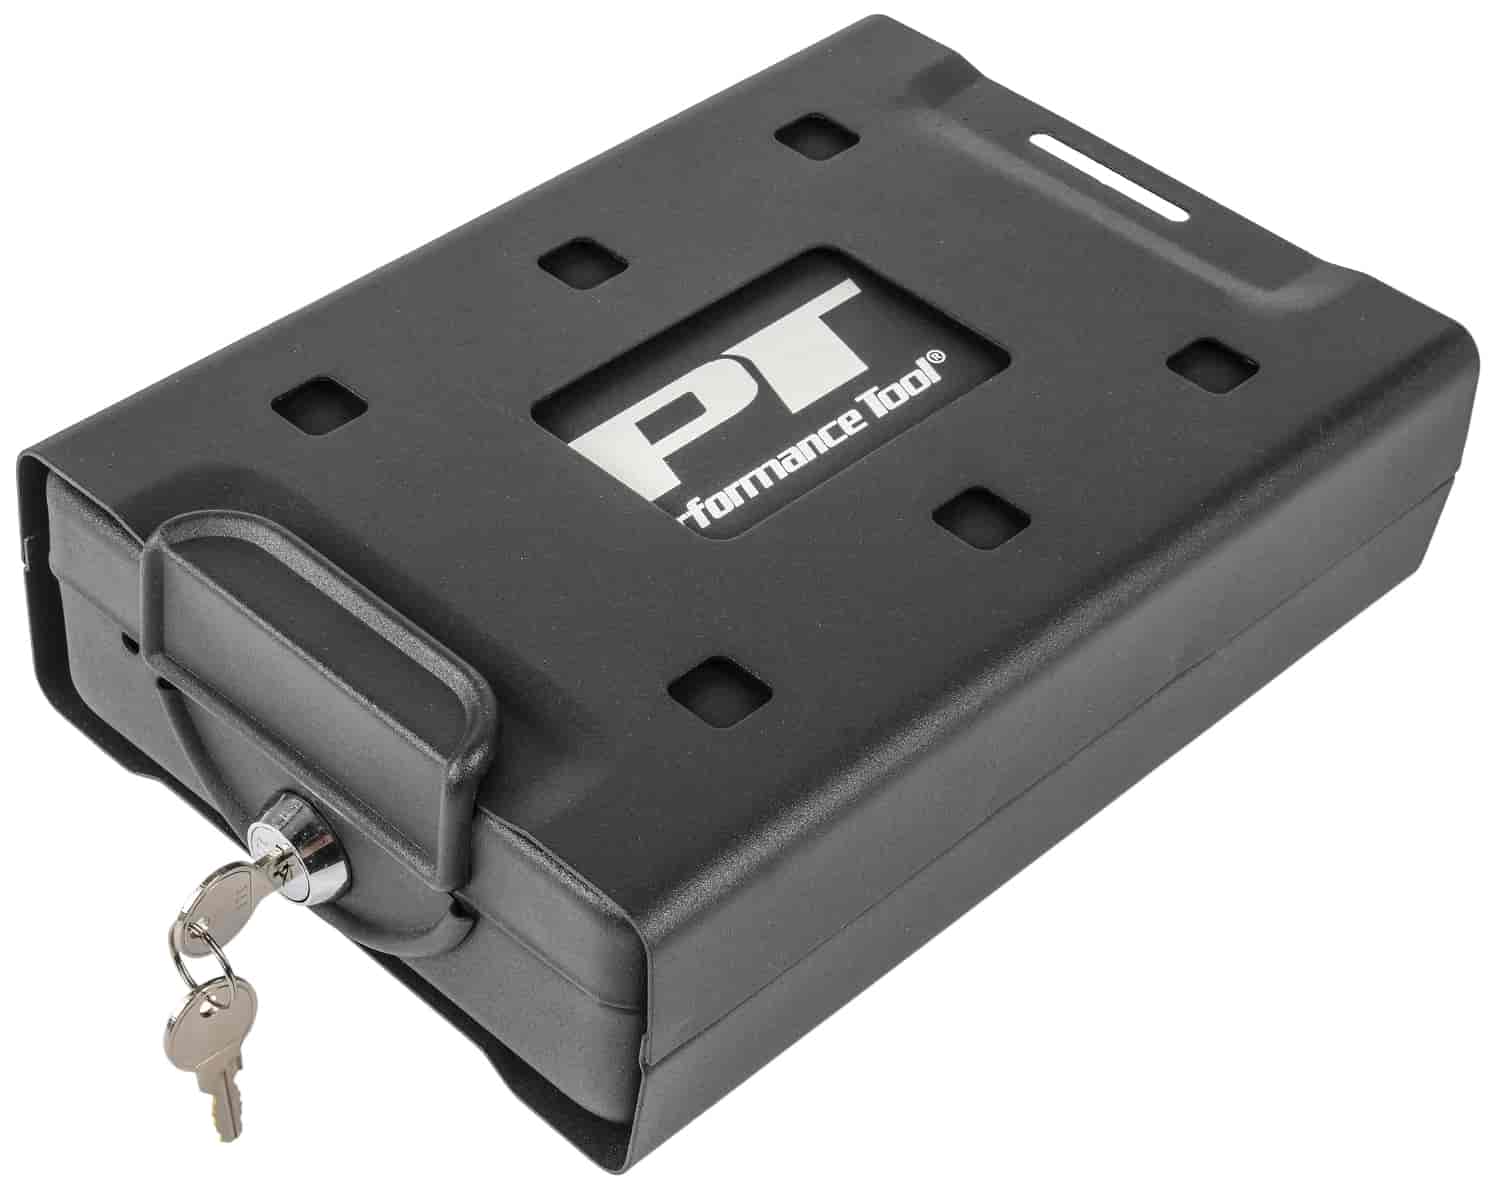 Portable Safe 8.2" x 5.9" x 2.2"